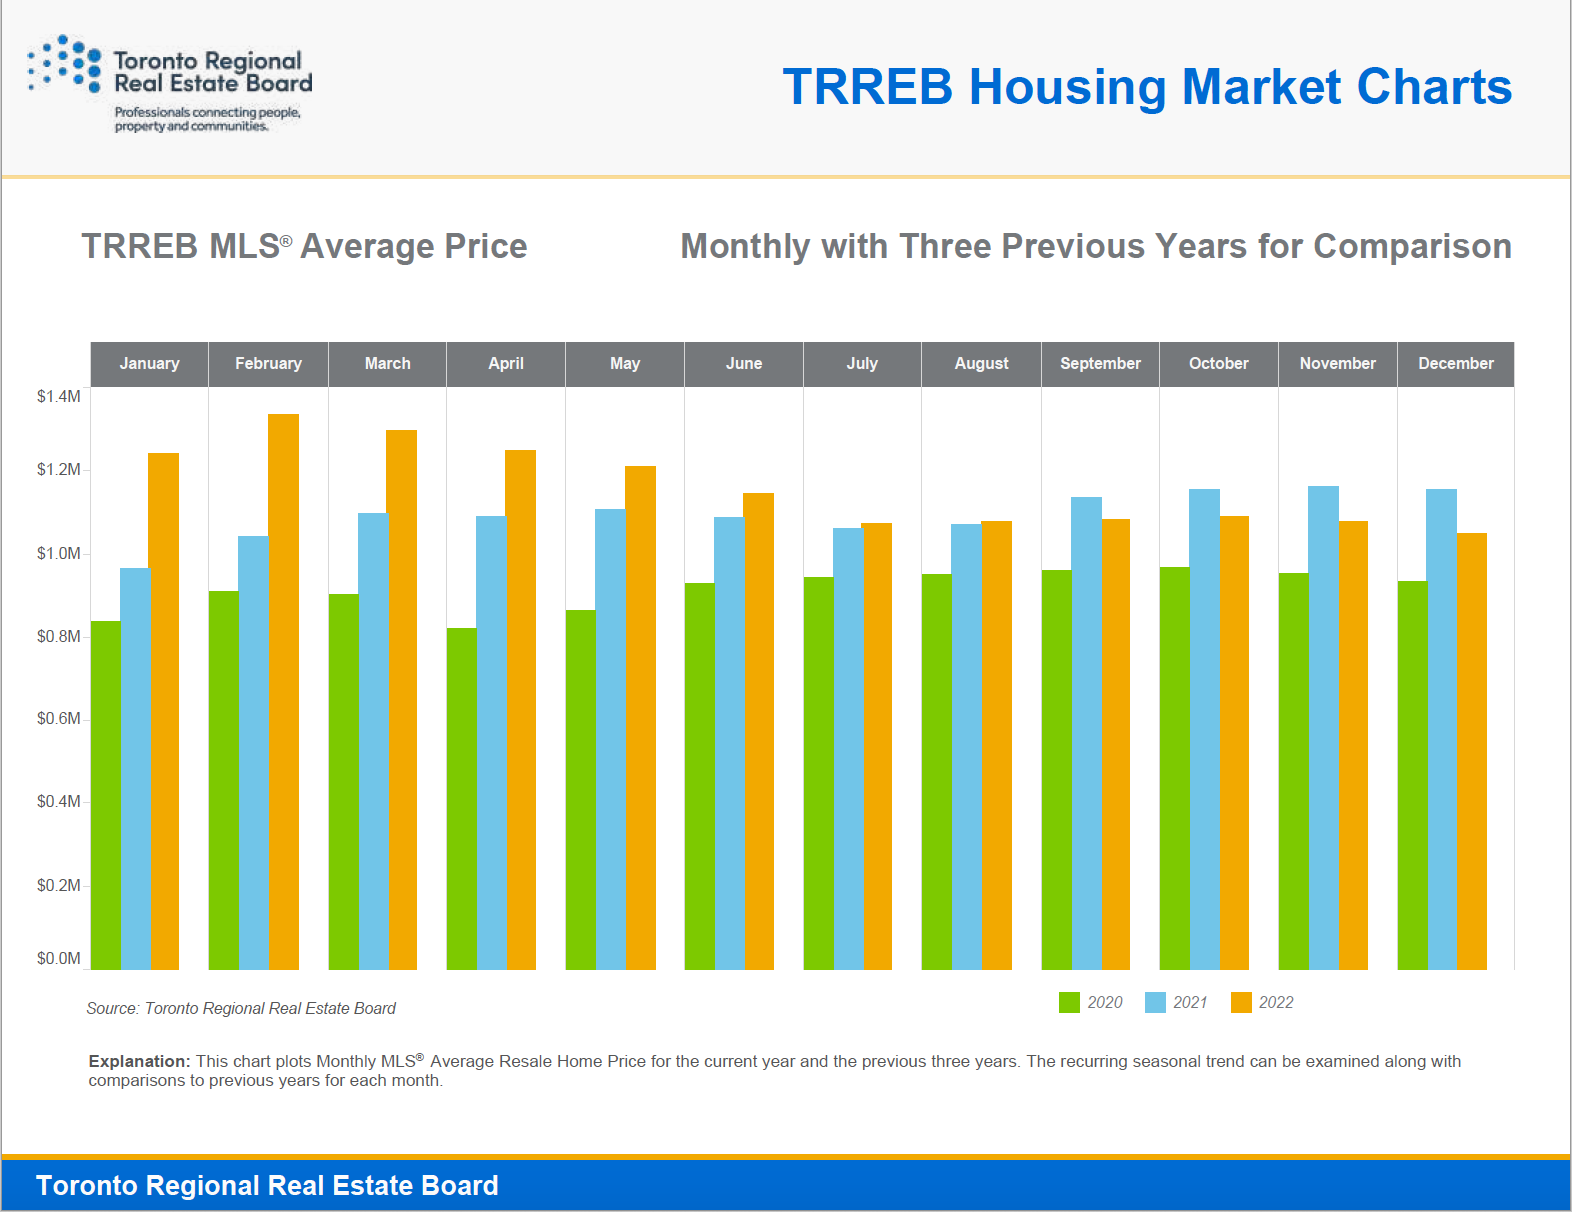 TRREB Average Selling Price